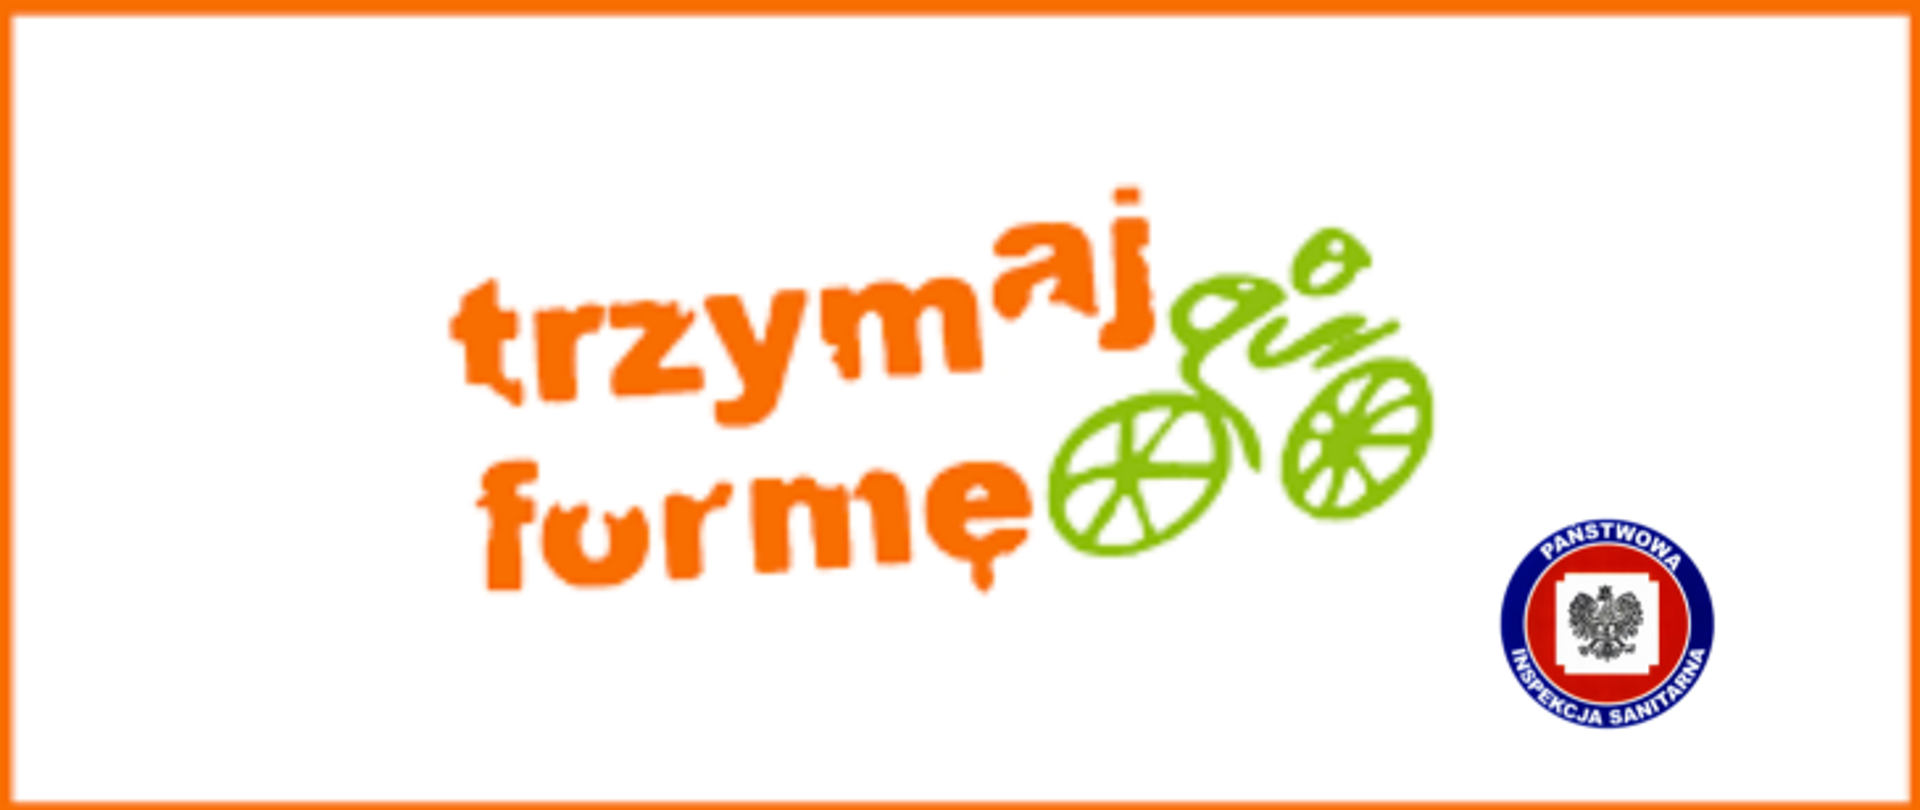 Biała grafika z pomarańczową obwódką, na białym tle w centrum pomarańczowy napis trzymaj formę z jego prawej strony zielona grafika kolarza jadącego na rowerze. W prawym dolnym rogu logo Państwowej Inspekcji Sanitarnej.